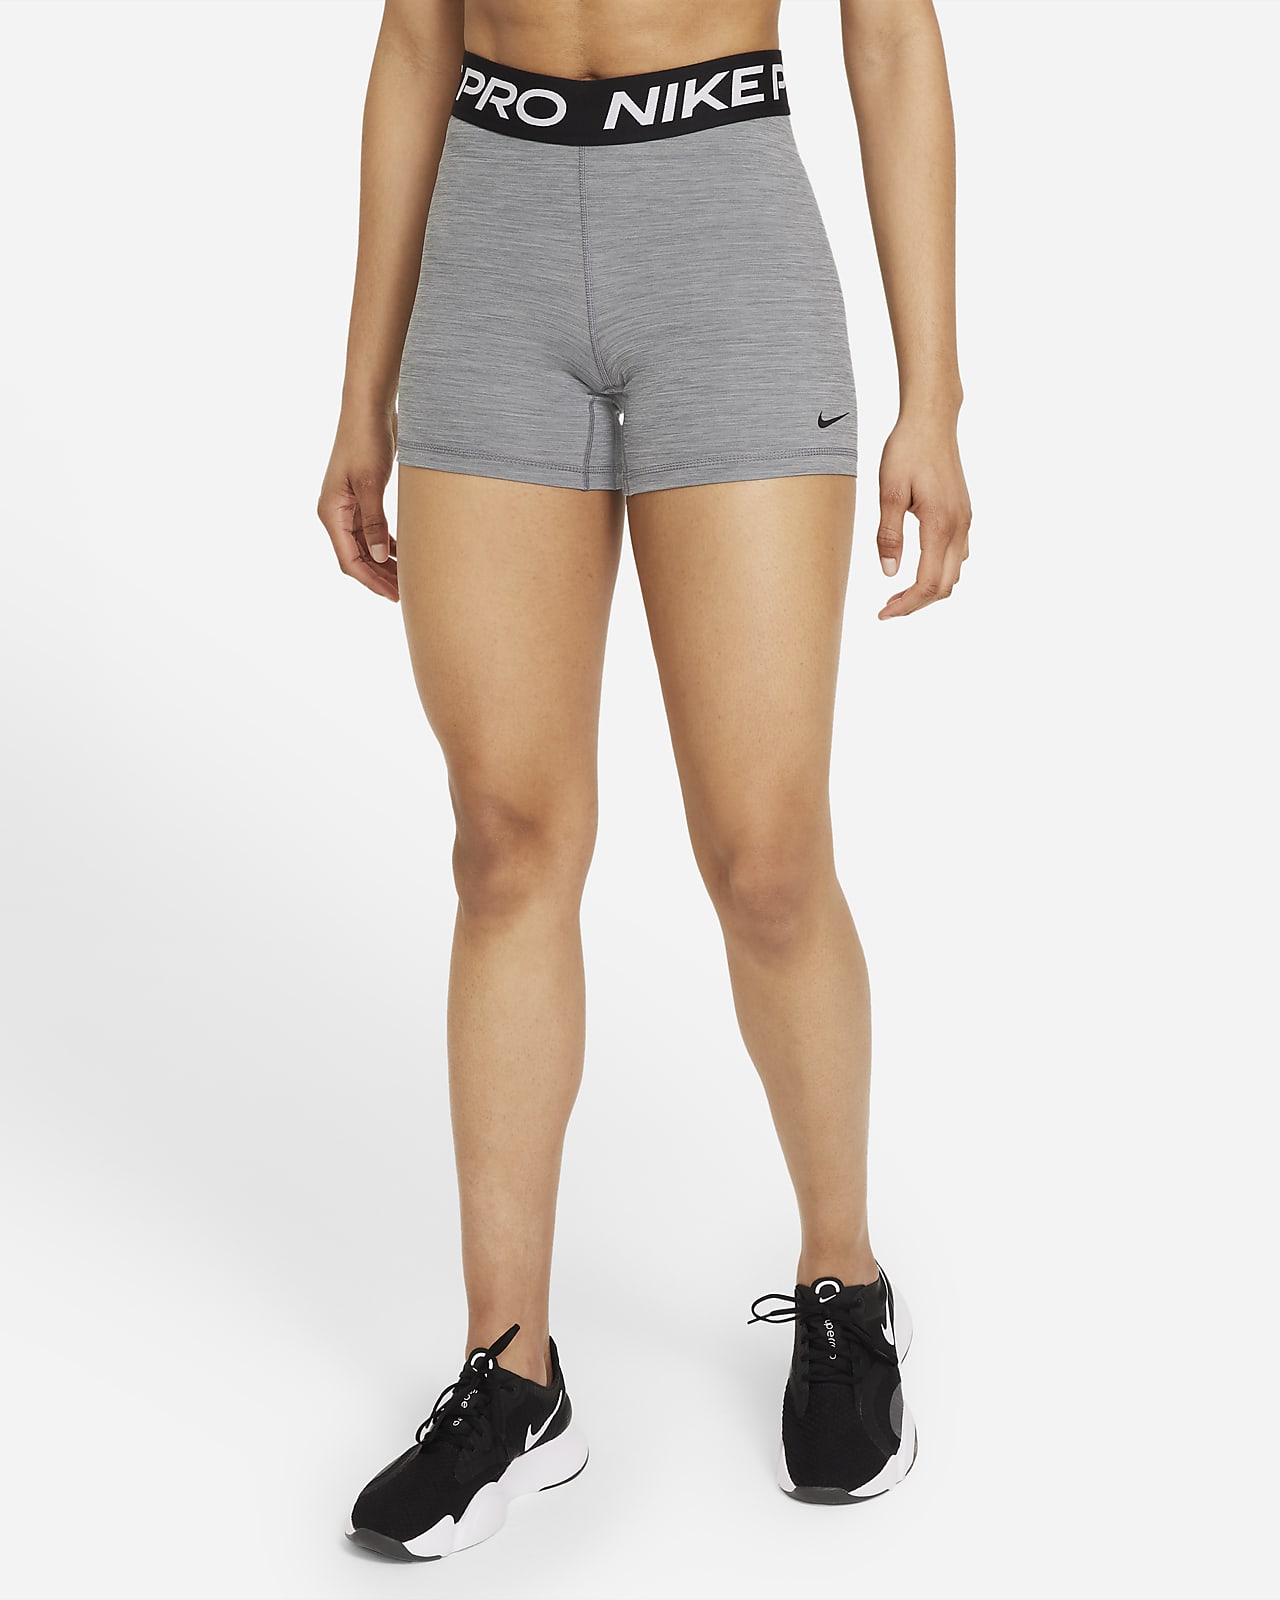 Shorts cm para mujer Nike Pro 365.